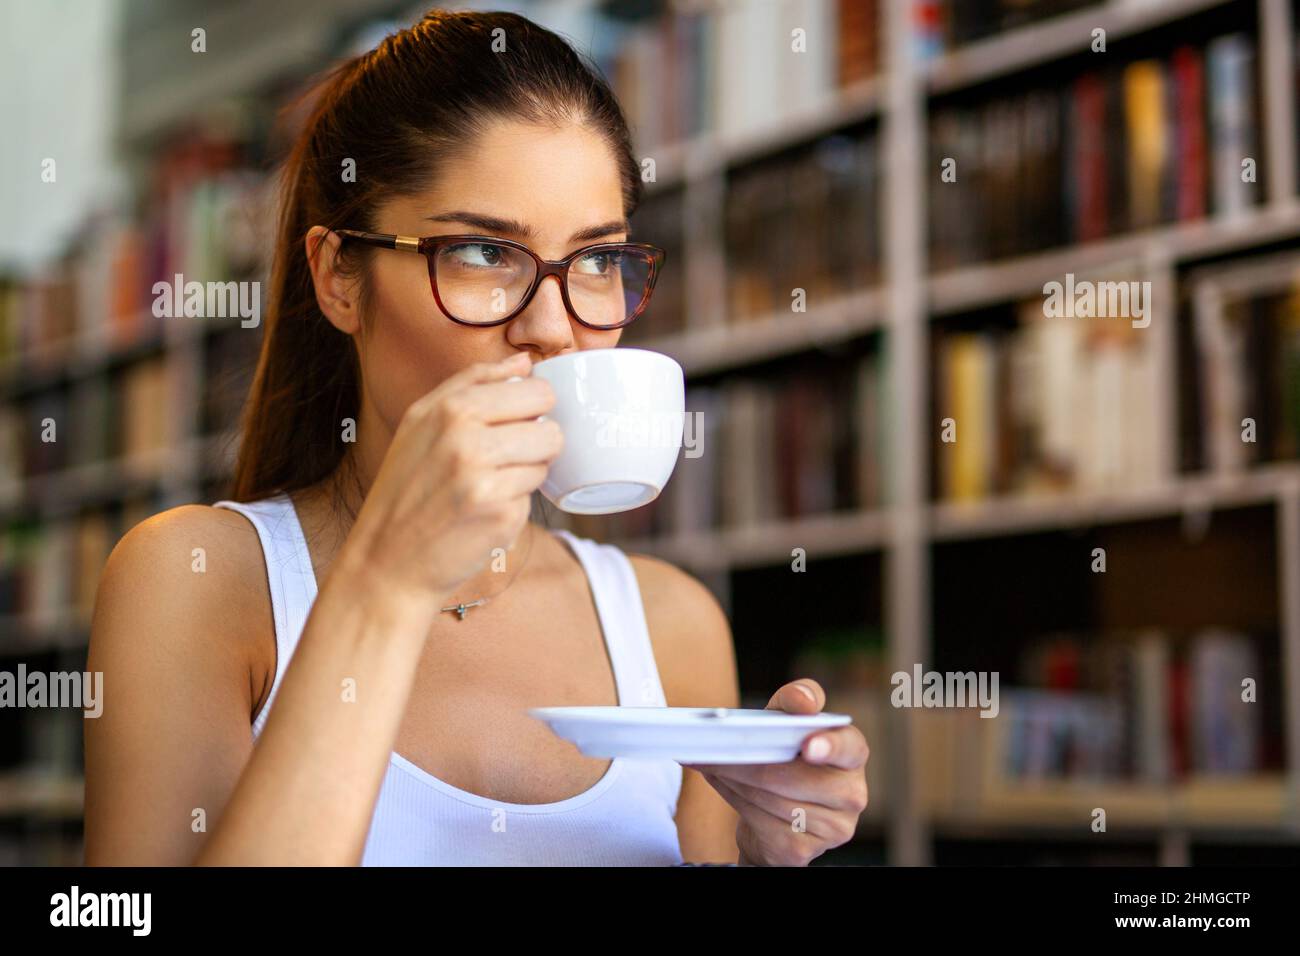 Ritratto di giovane donna felice godendo una tazza di caffè o tè os. Concetto di relax delle persone. Foto Stock